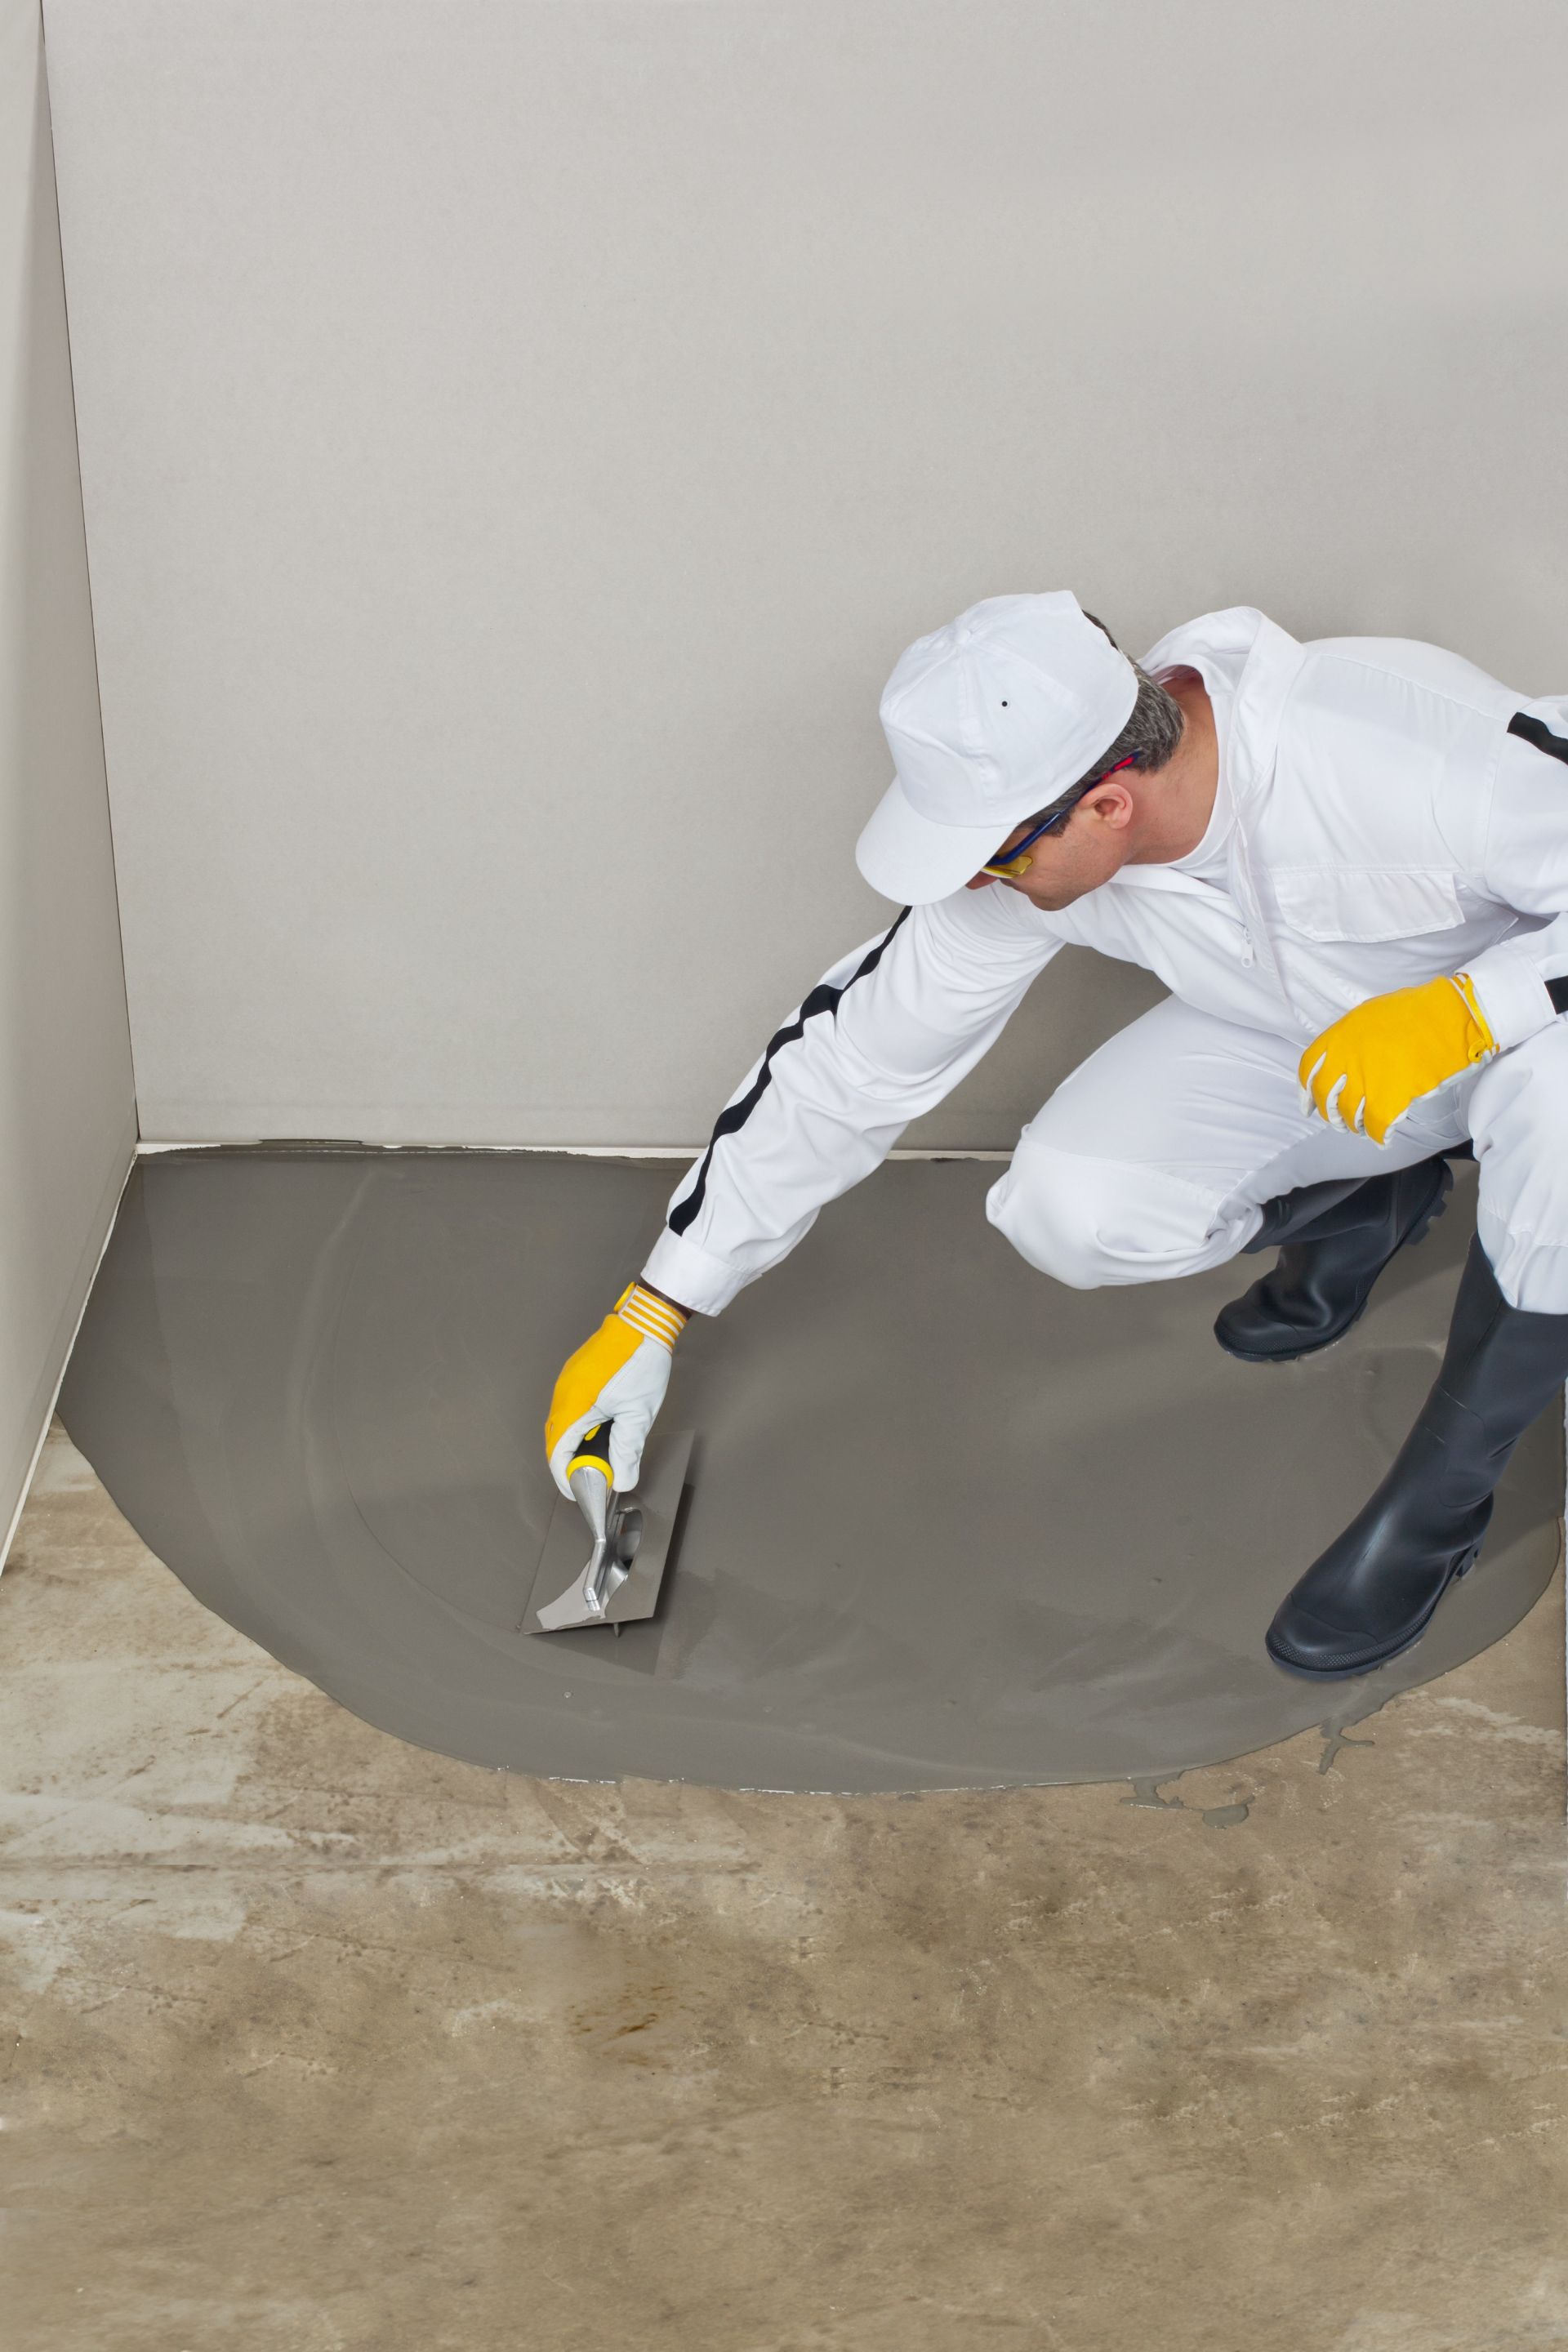 Poptávka na zhotovení leštěné betonové podlahy do garáže (Podlahy) - Žďár nad Sázavou